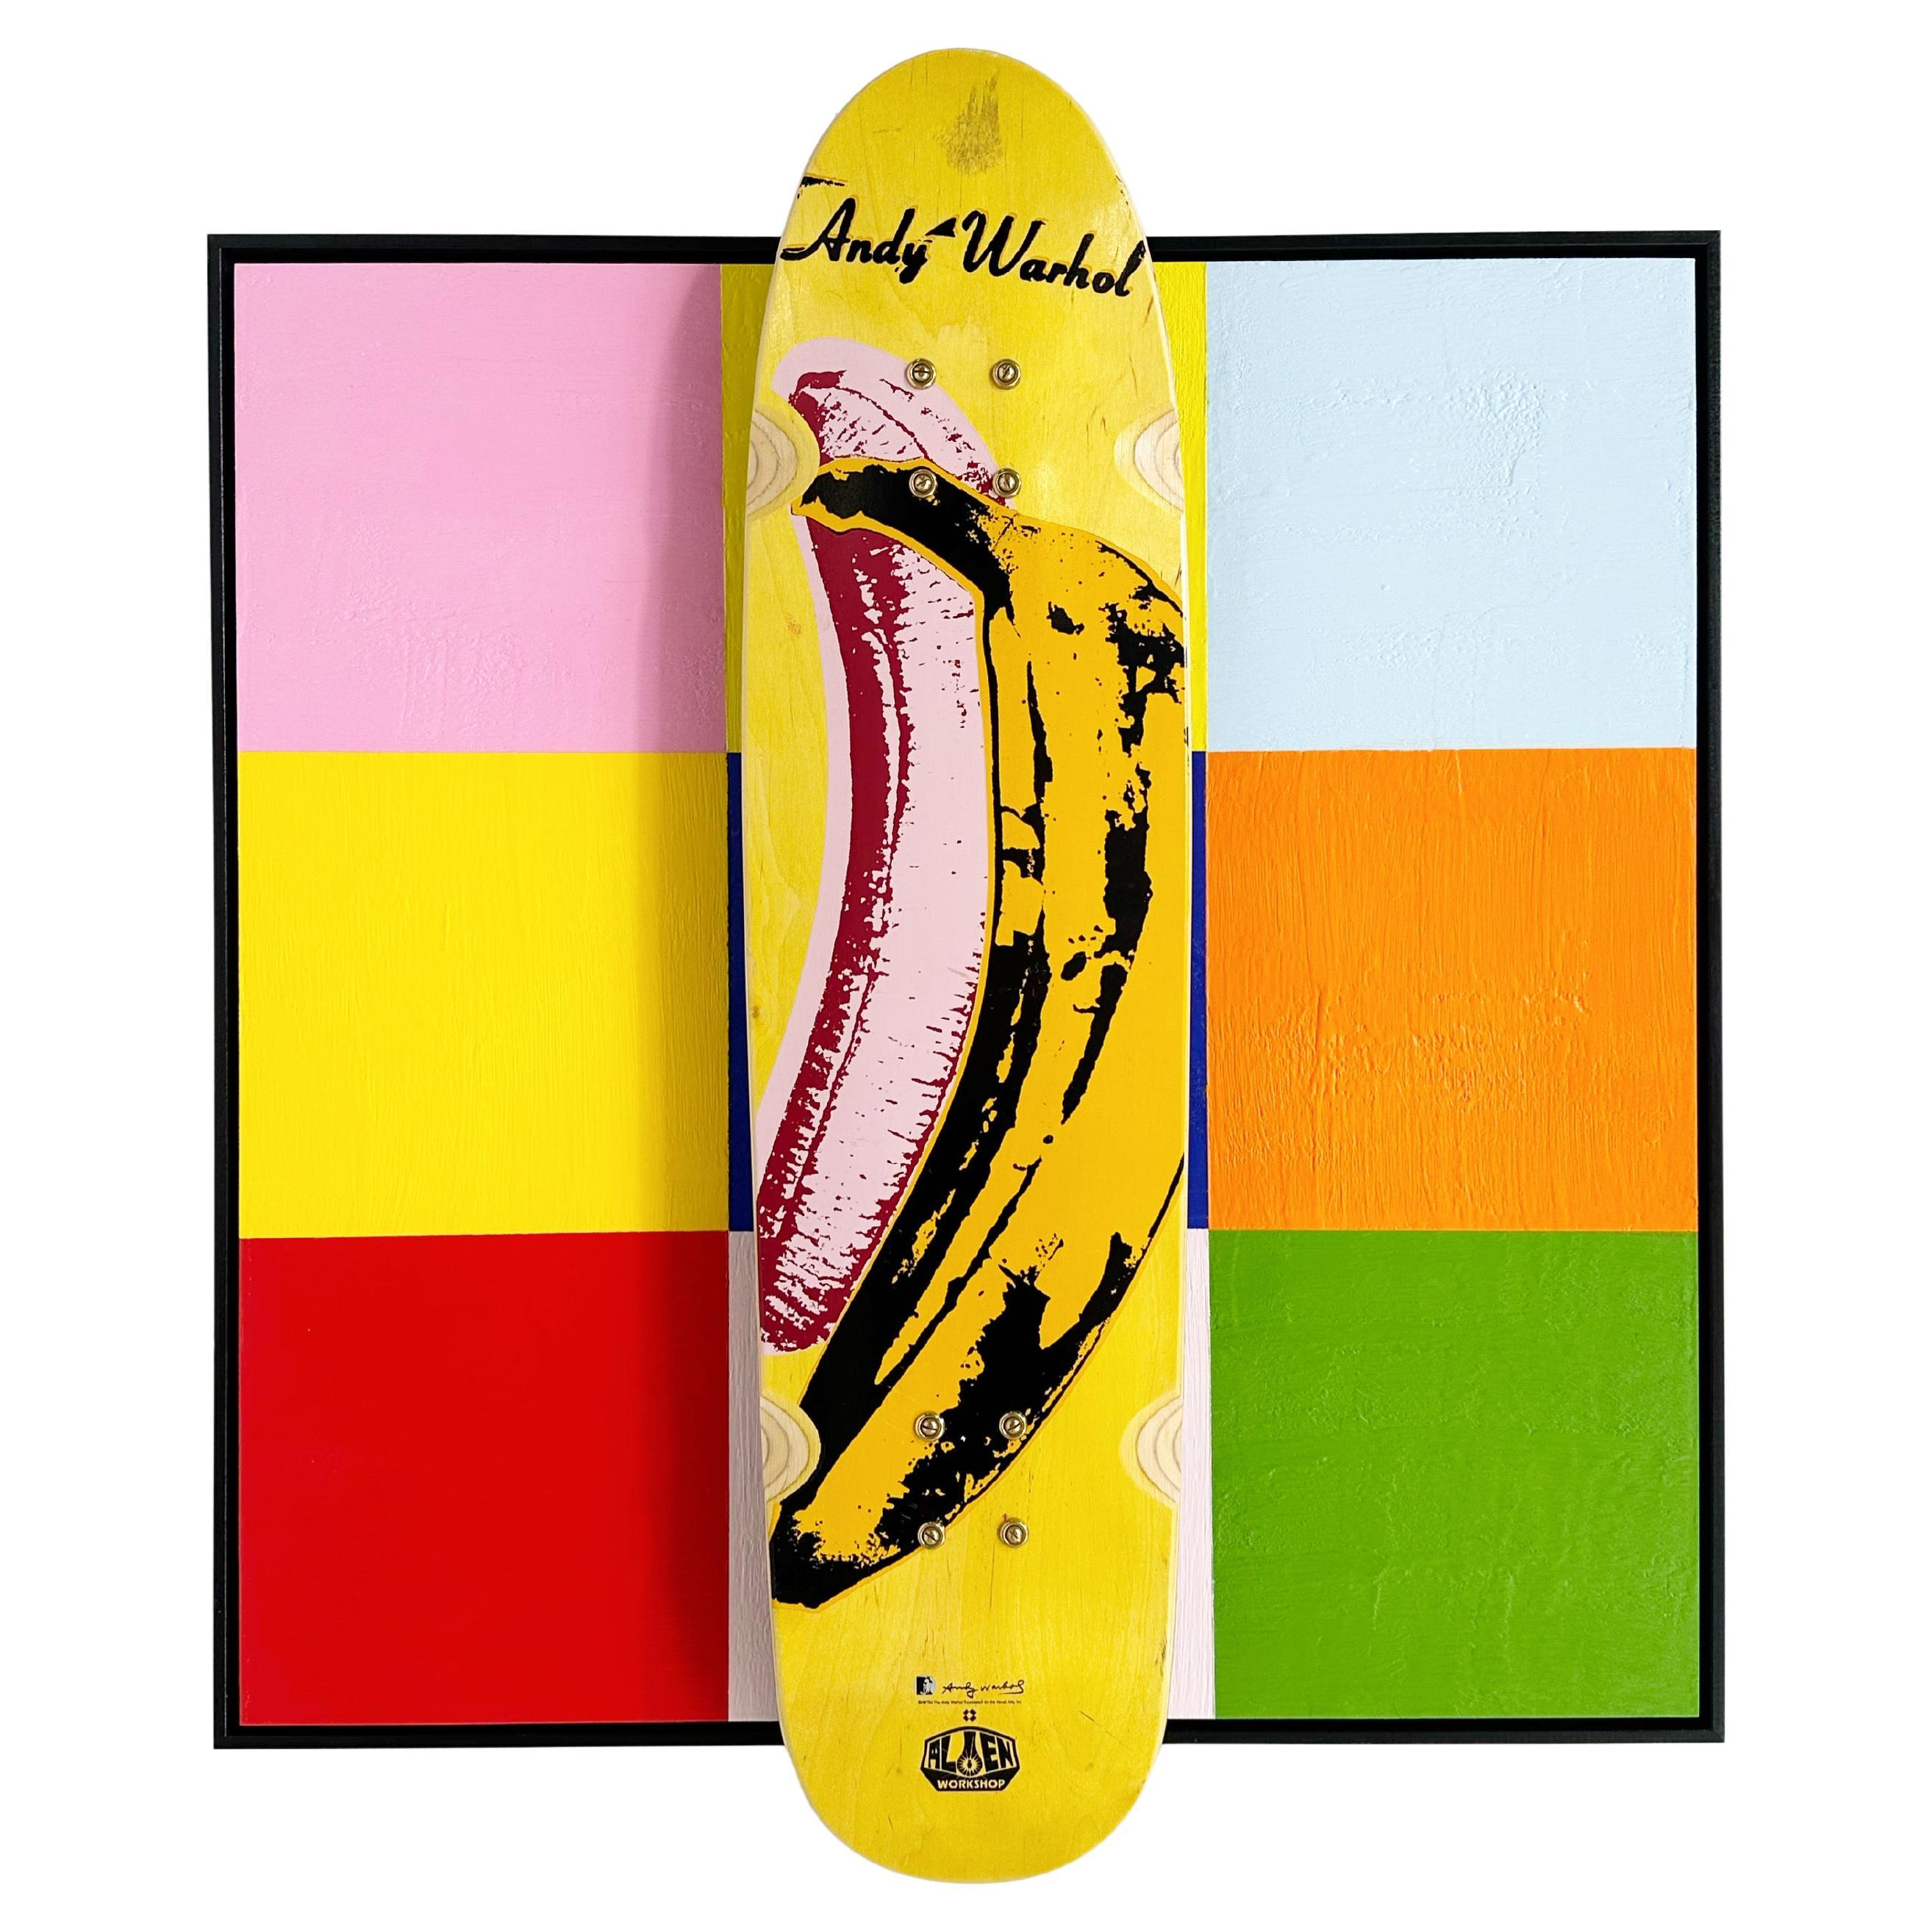 John O'Hara. Deck, Banana, 2023, Encaustic and Skate Deck Painting For Sale